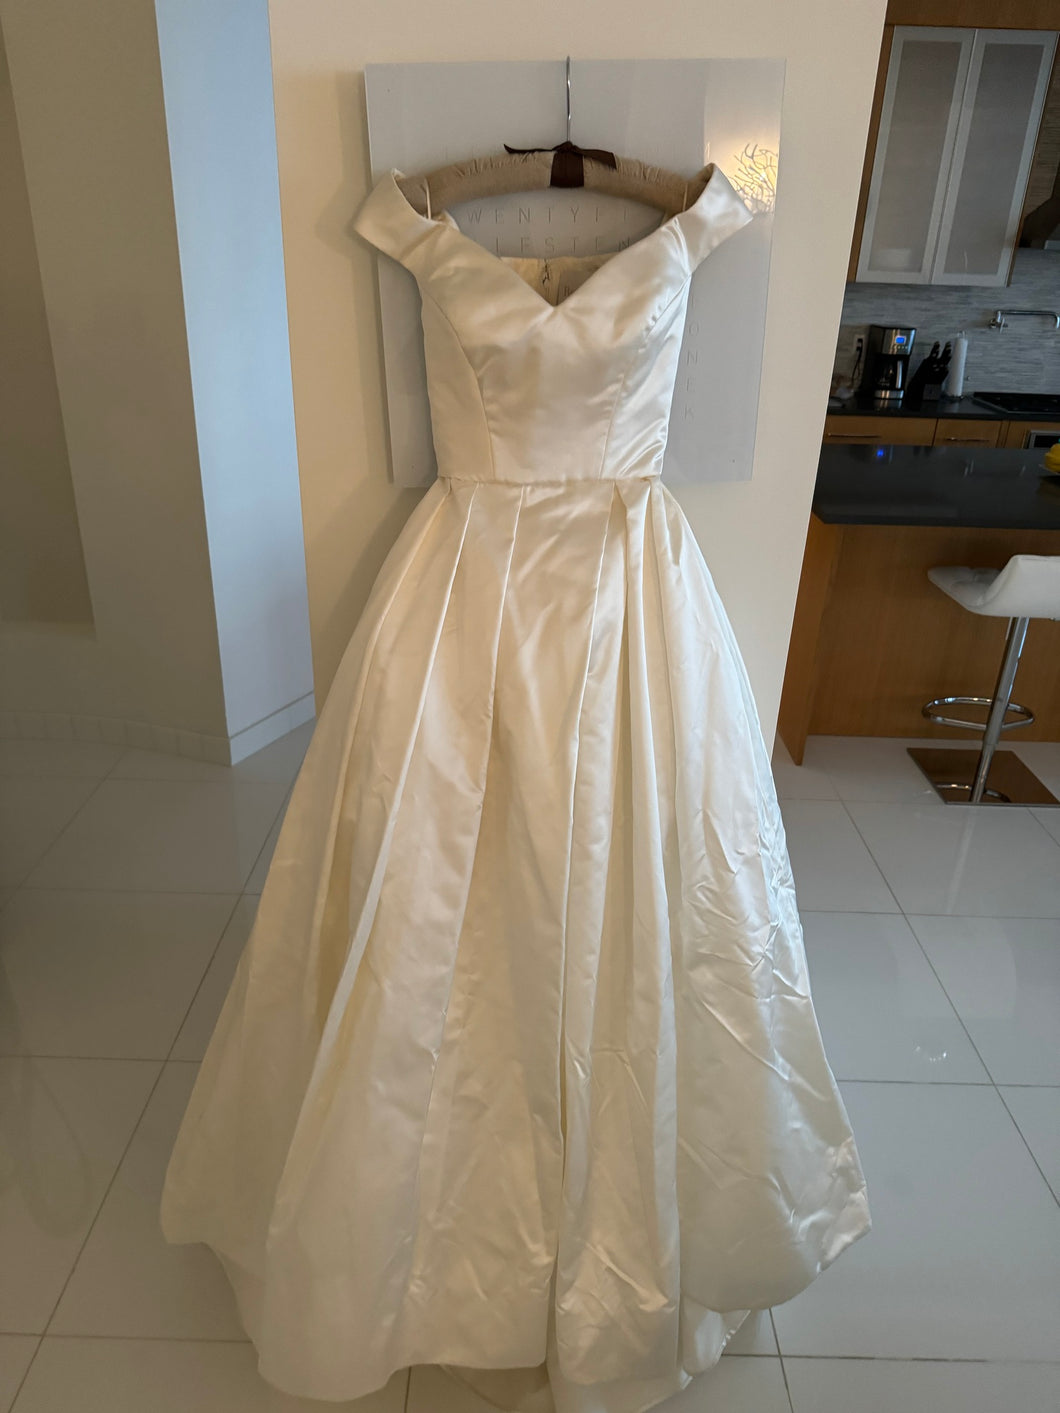 Reem Acra 'Good Grace' wedding dress size-00 NEW